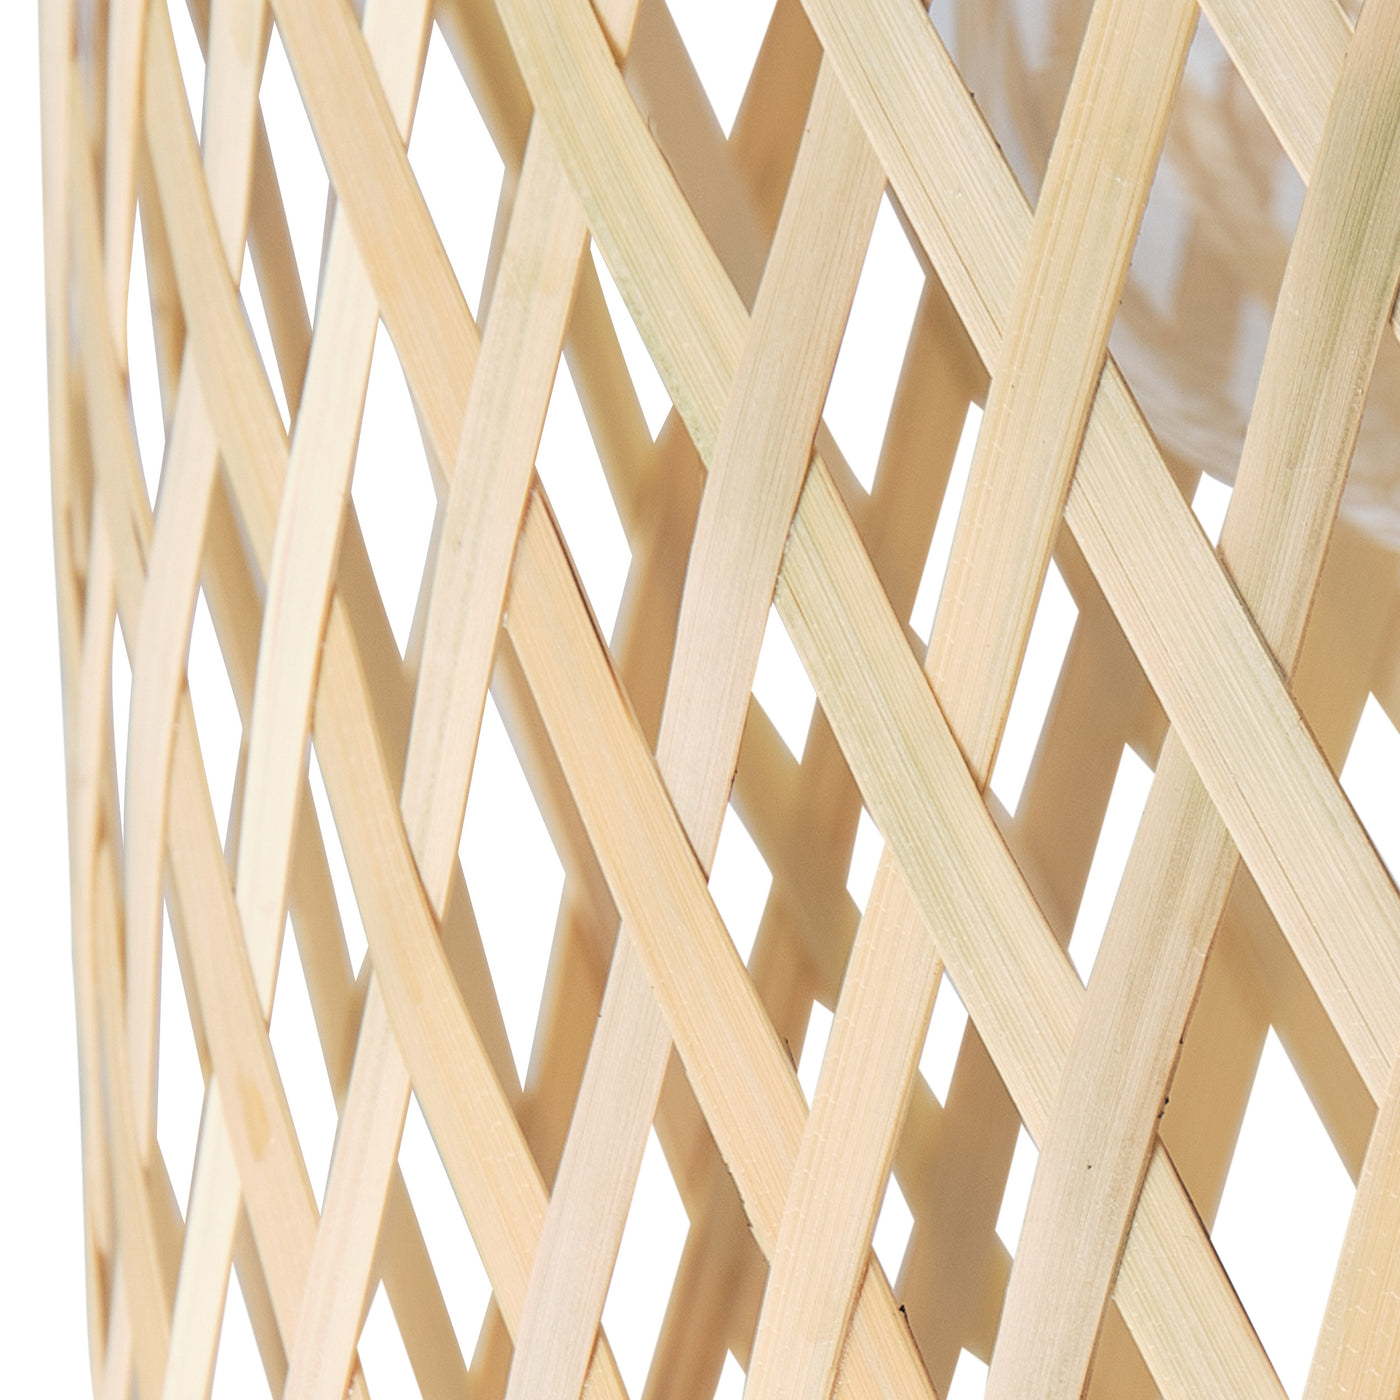 1-Light Bamboo Basket Shape Openwork Design Semi-Flush Mount Lighting